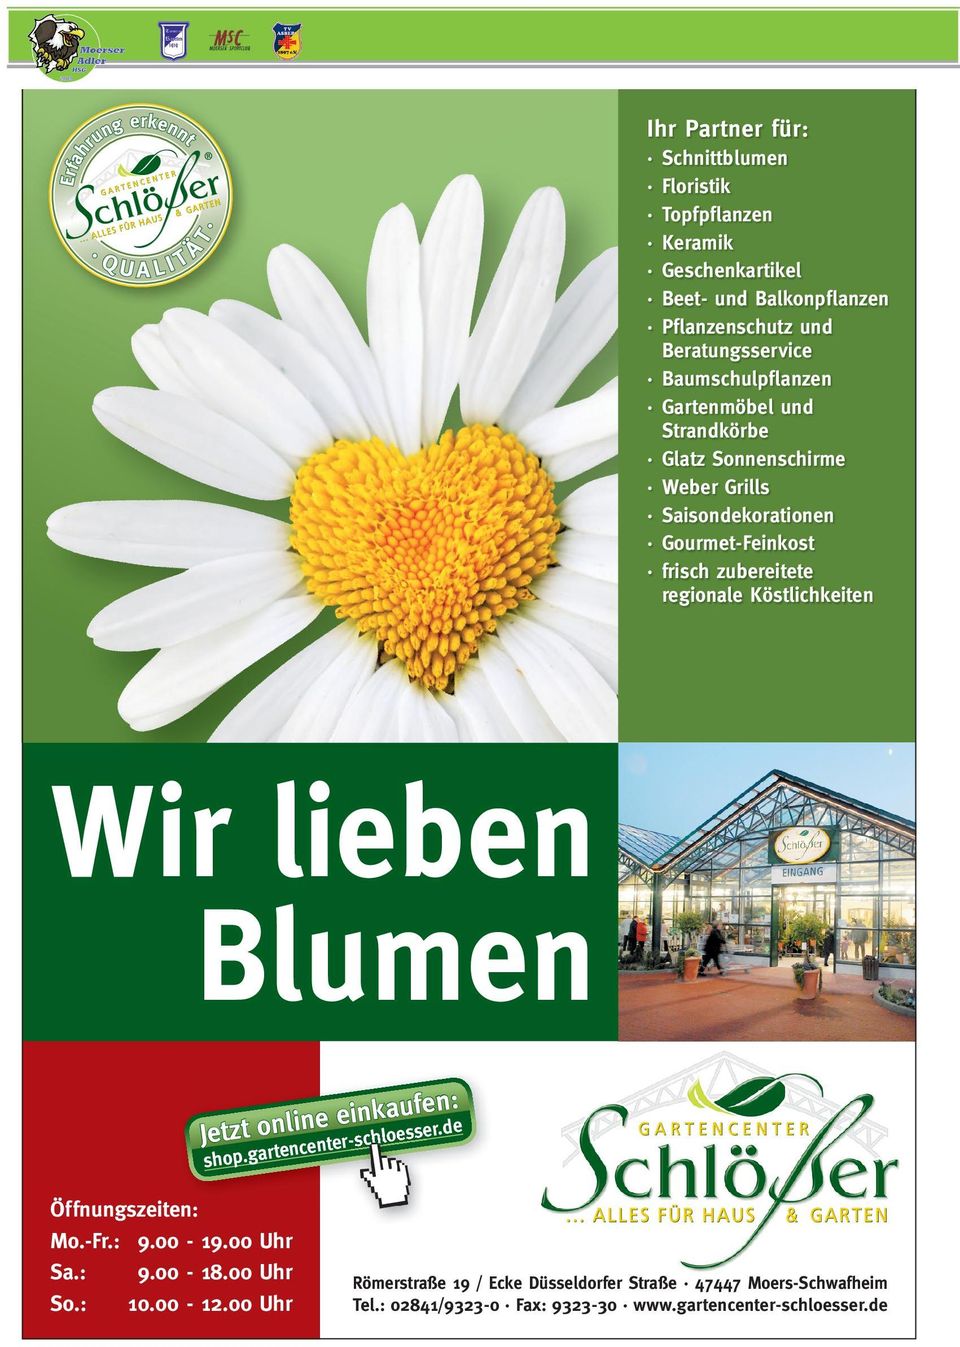 Köstlichkeiten Wir lieben Blumen : einkausfeer.nde e n li n o t s z e Jet nter-schlo shop.gart ence Öffnungszeiten: Mo.-Fr.: 9.00-19.00 Uhr Sa.: 9.00-18.